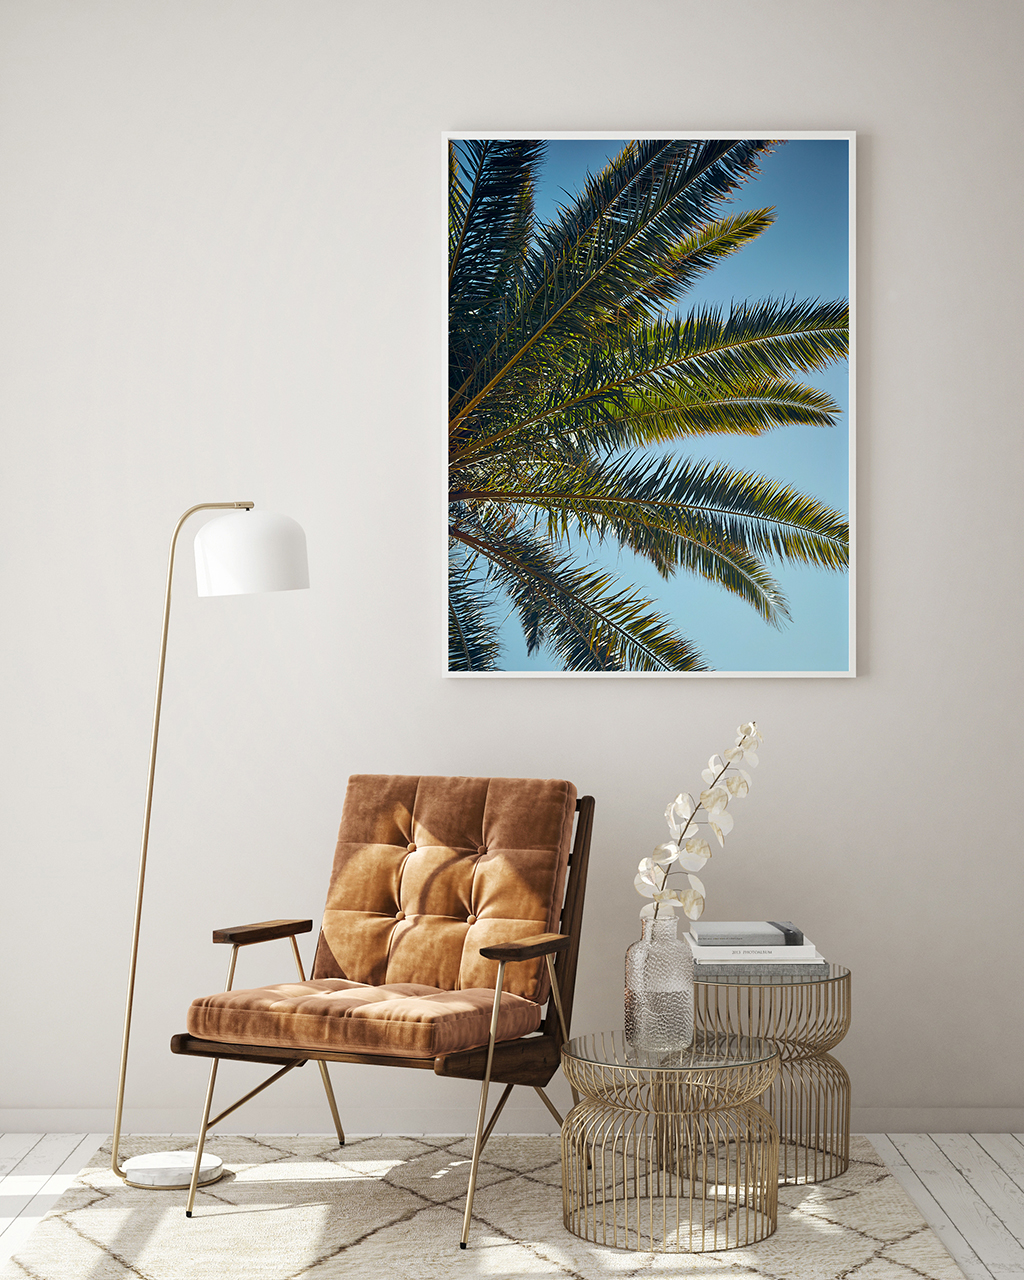 mock up poster frame in modern interior background, living room,